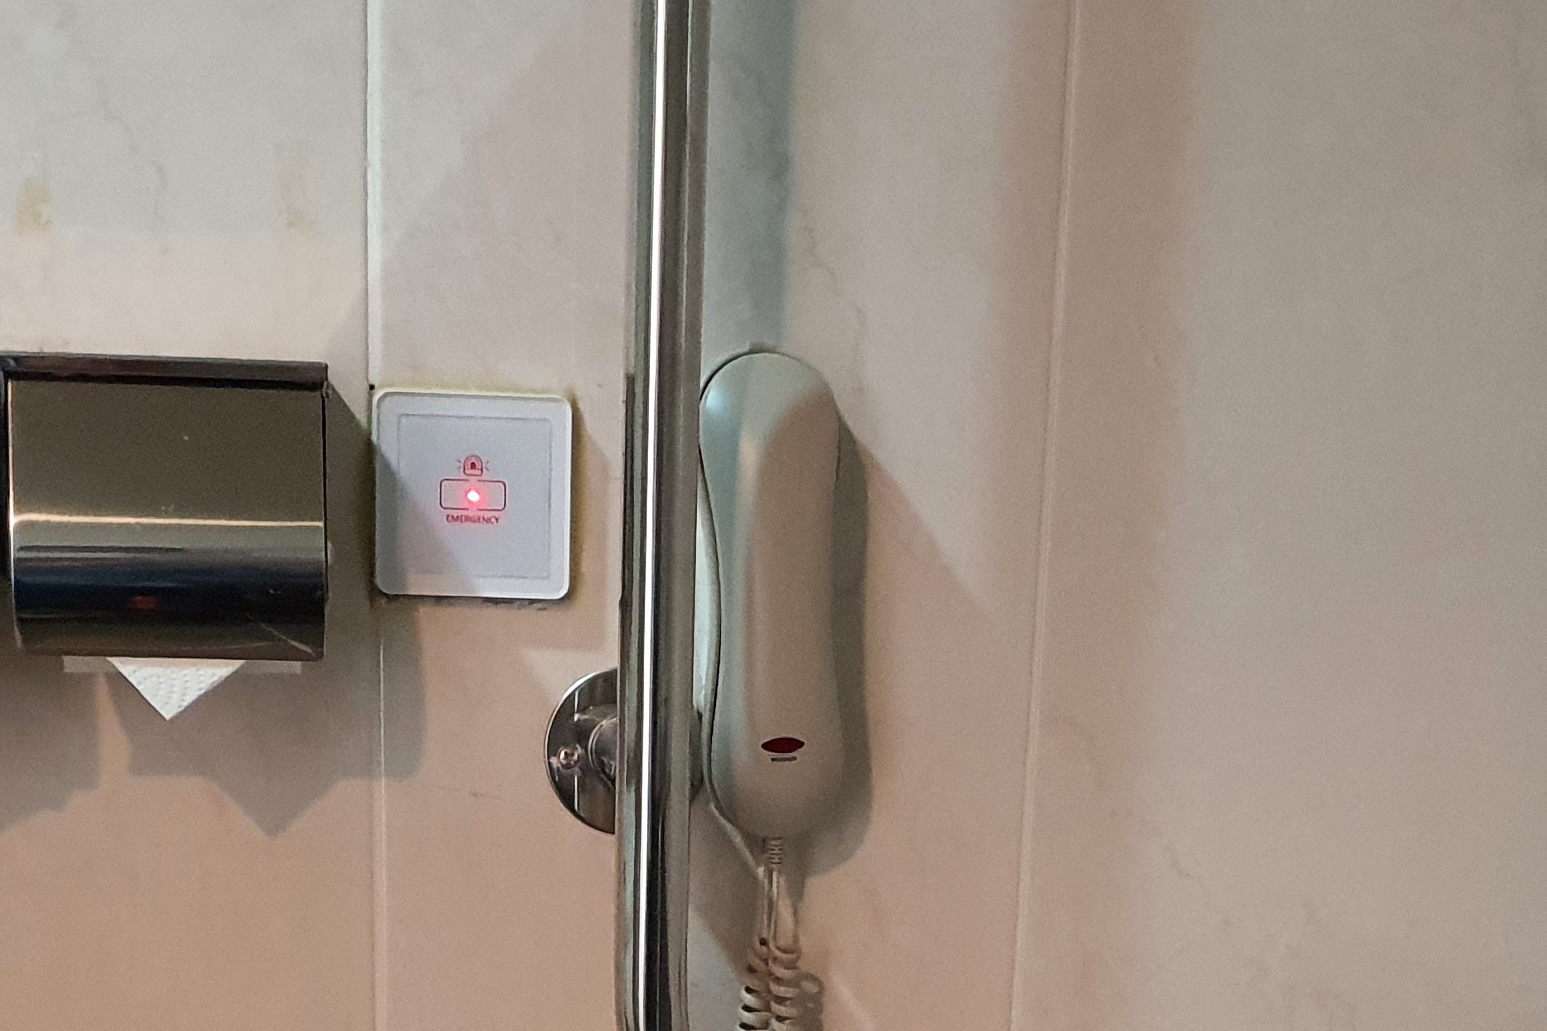 객실 내 화장실0 : 화장실에 설치된 비상용 전화기